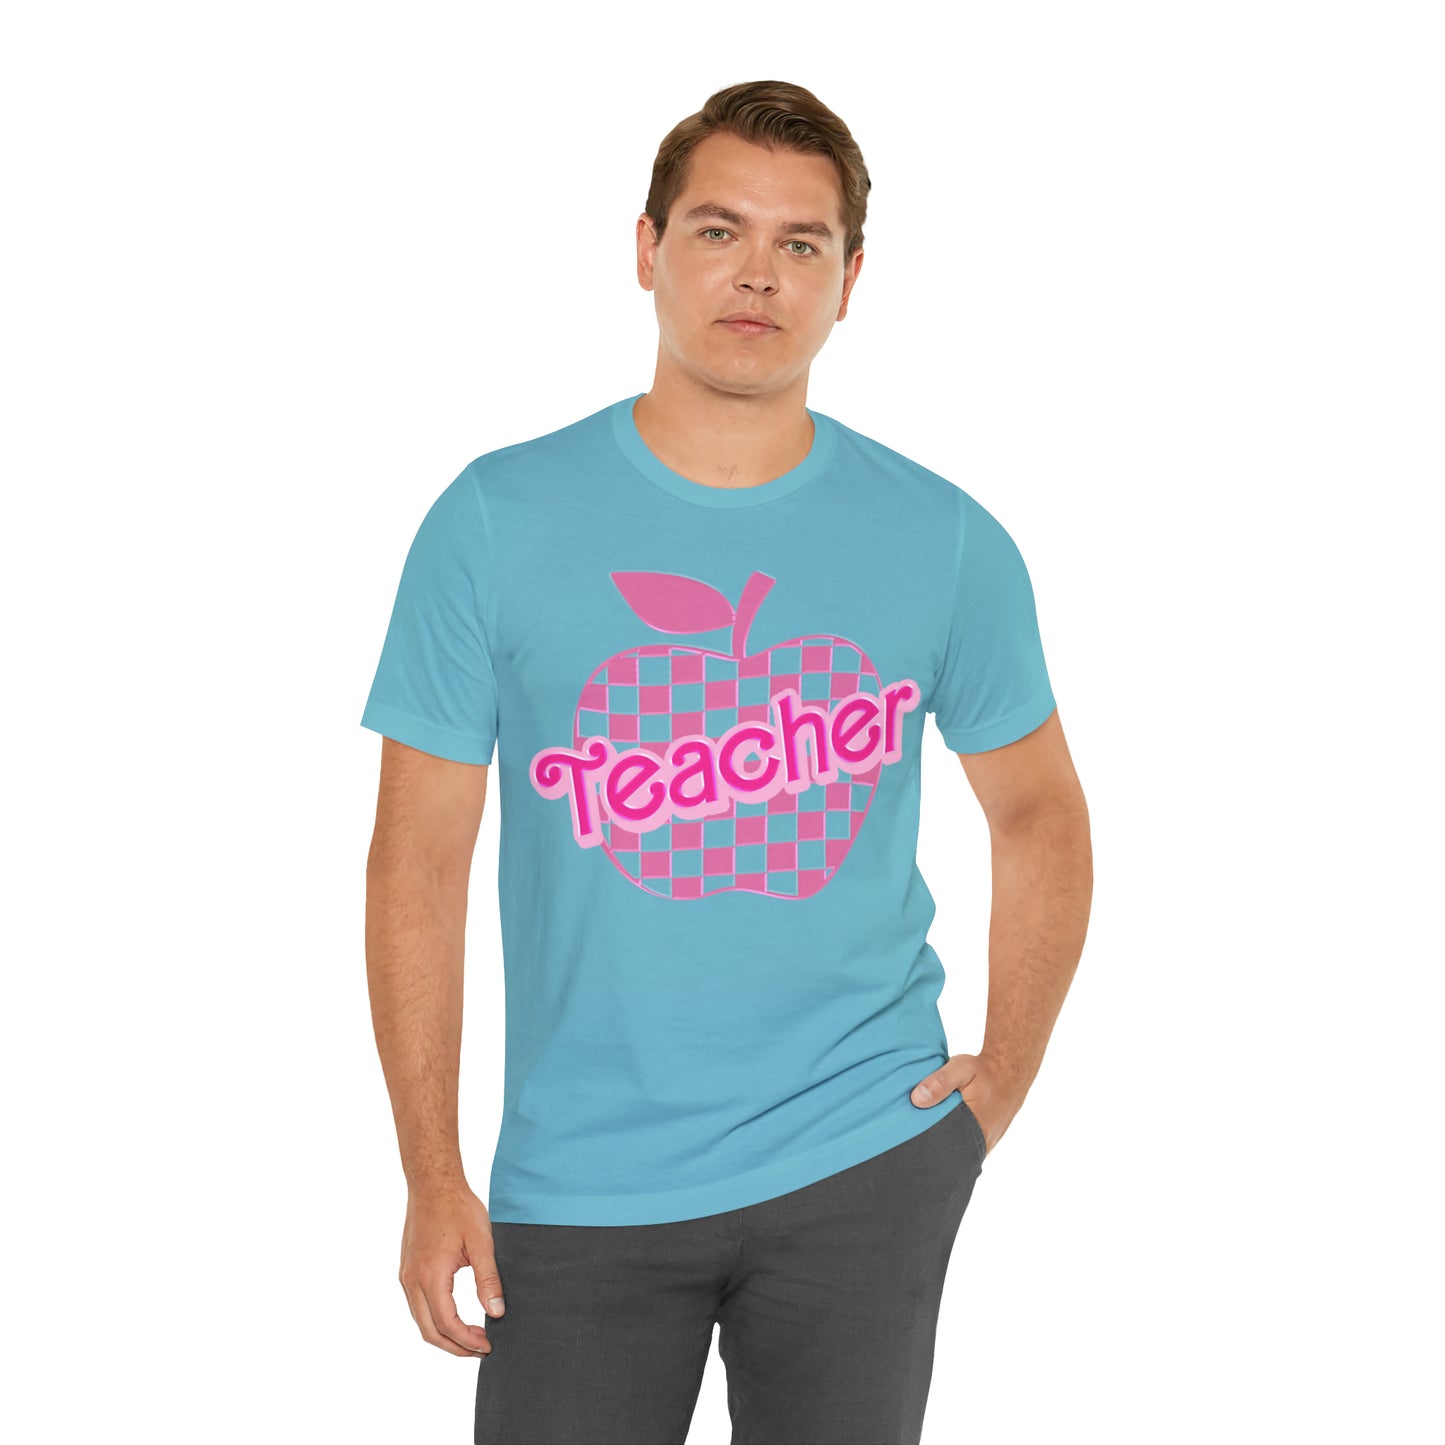 Teacher Shirt, Pink Teacher Shirts, Trendy Teacher Tshirt, Teacher Appreciation Checkered Teacher Tee, Gifts for Teachers, Teacher Era, T794